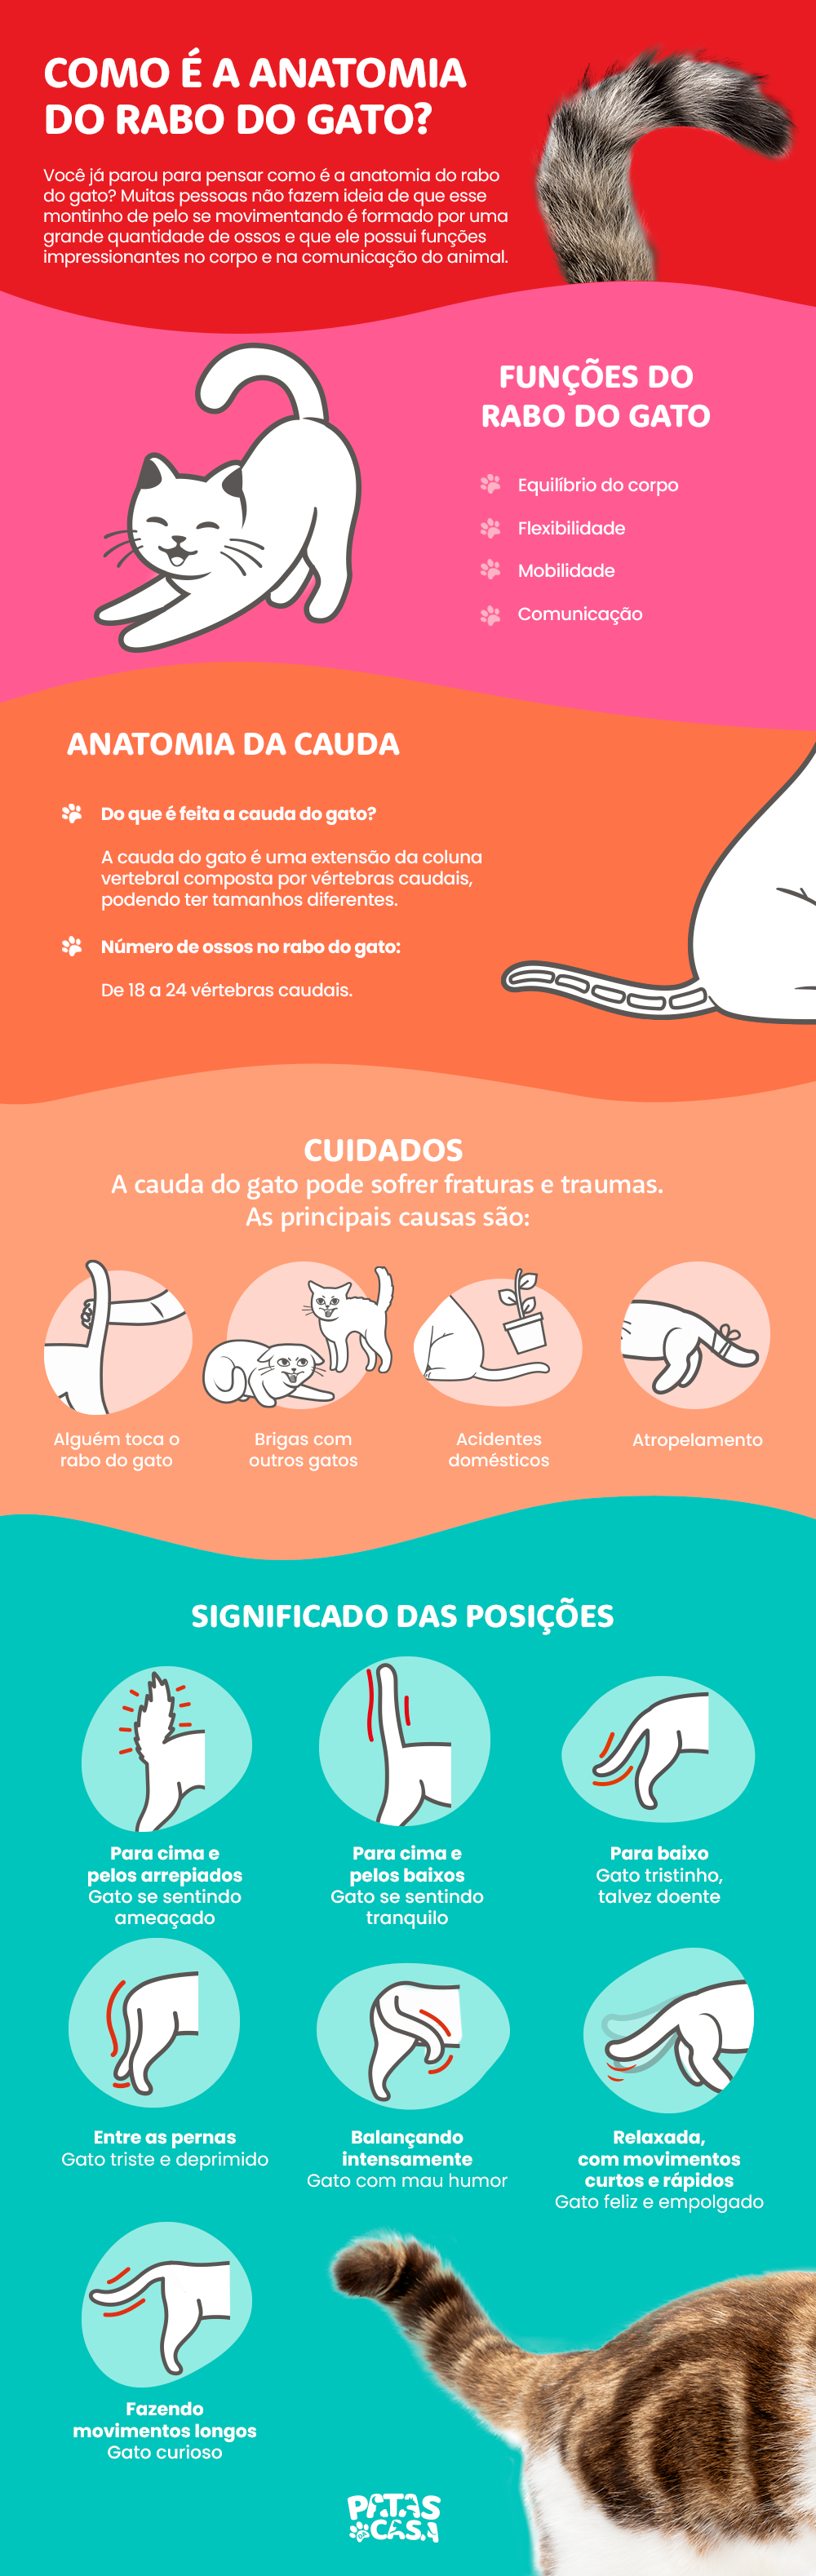 infográfico sobre anatomia do rabo do gato